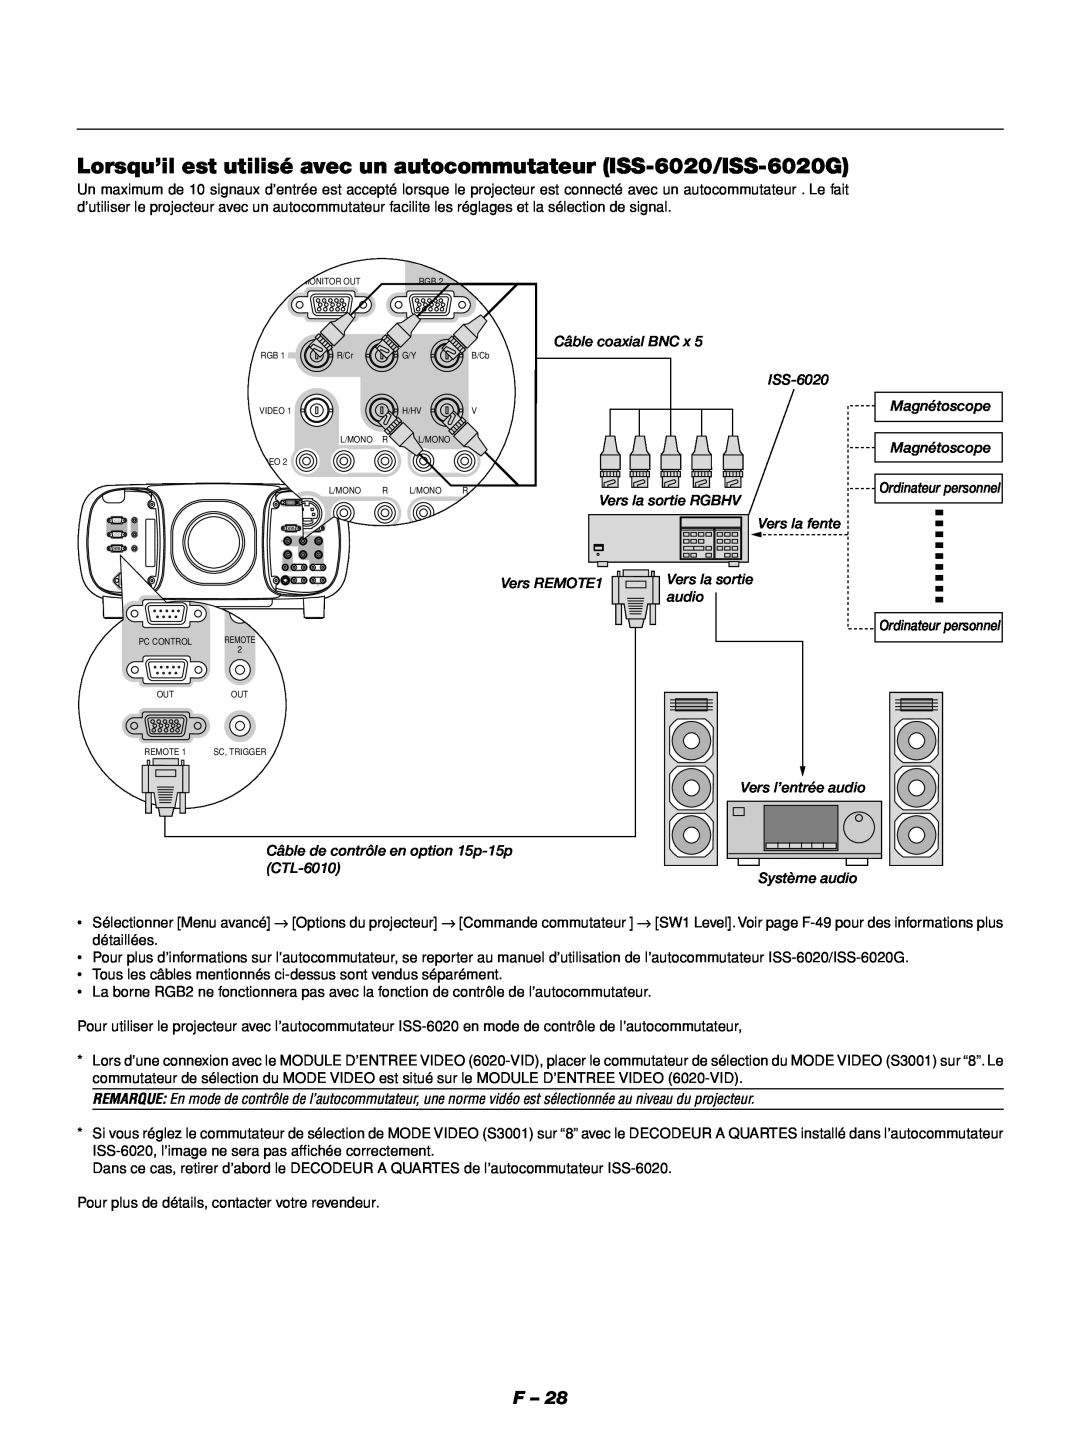 NEC GT1150 Lorsqu’il est utilisé avec un autocommutateur ISS-6020/ISS-6020G, Câble coaxial BNC x, Système audio 